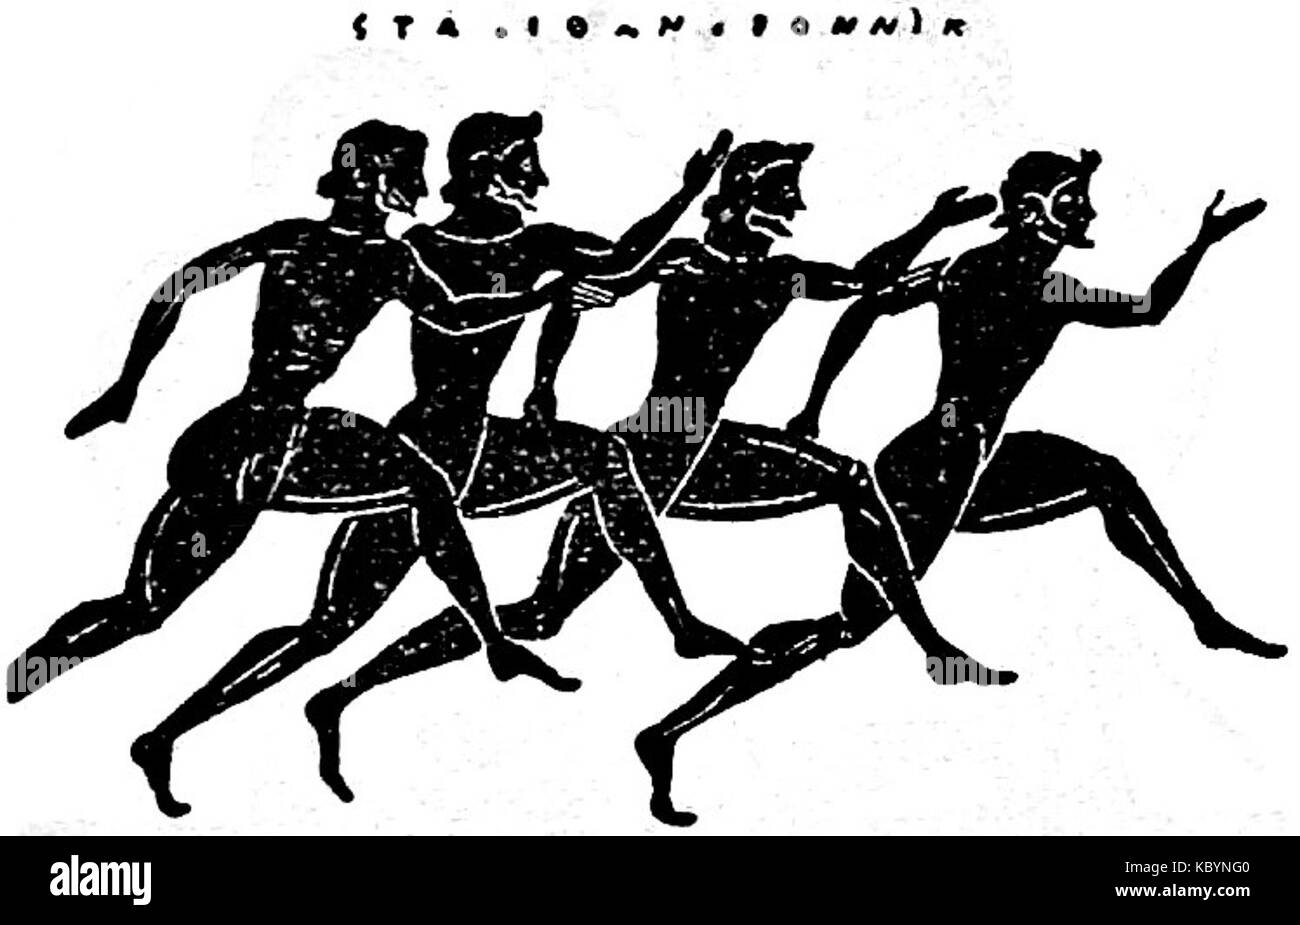 Соревнования на олимпийских играх в древней греции. Олимпийские игры в Греции в древности бег. Легкая атлетика в древней Греции. Бег в древней Греции на Олимпийских играх. Стадиодром в древней Греции это.